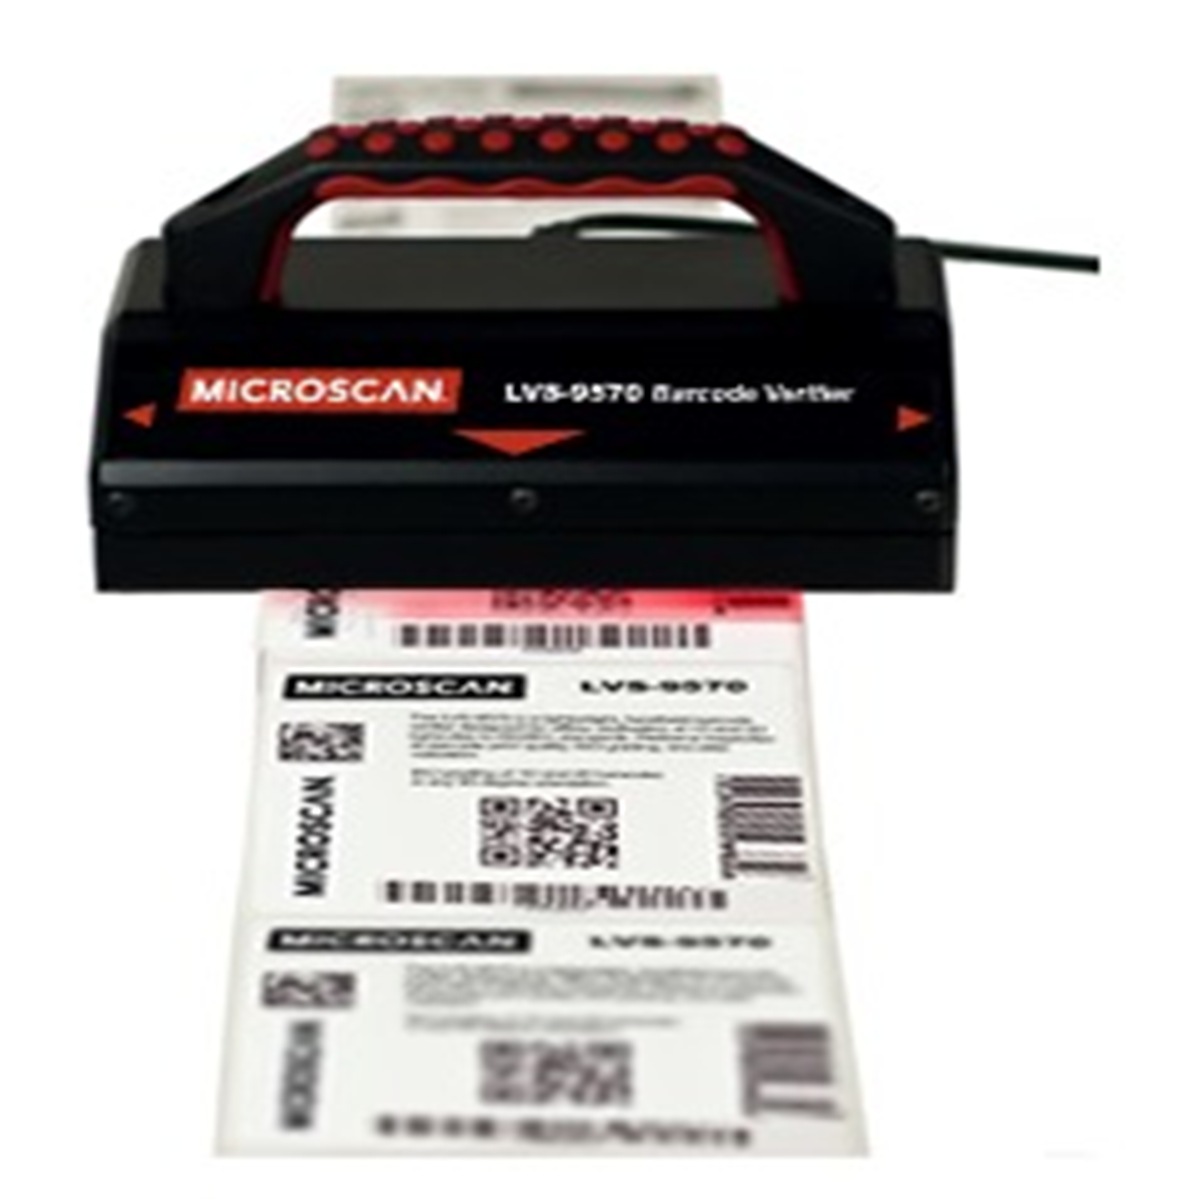 LVS 9570 barcode verifier